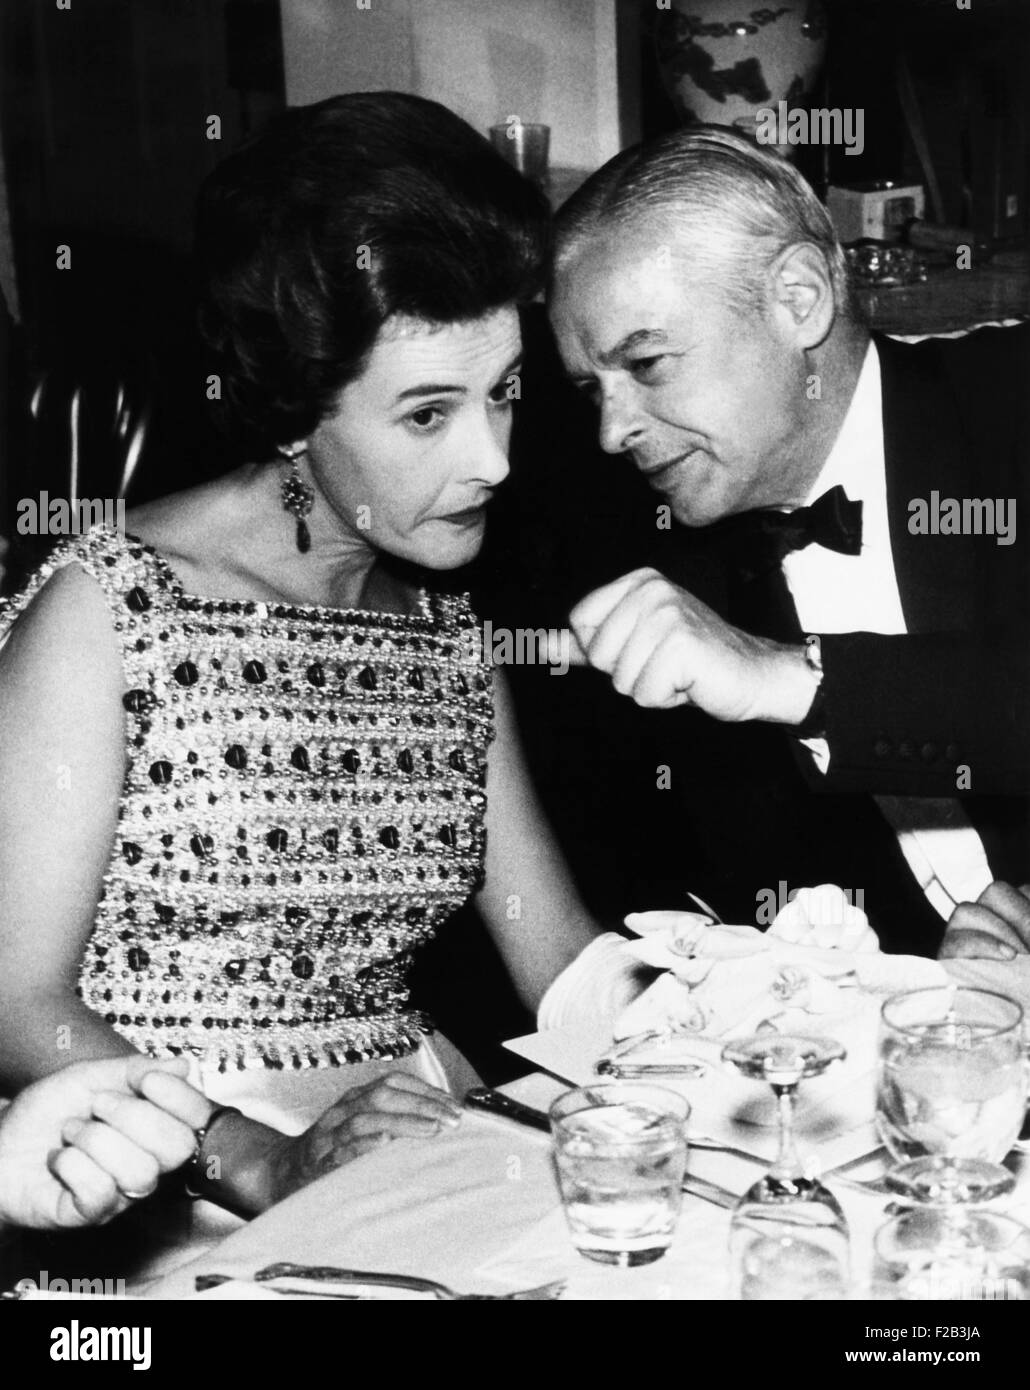 Le sous secrétaire à la défense, Paul Nitze avec Lady Doyen, épouse de l'ambassadeur britannique. Ils sont à un dîner donné par l'ambassadeur du Danemark et Mme Torben Ronne. Le 12 décembre 1967. - (CSU 2015 6 187) Banque D'Images